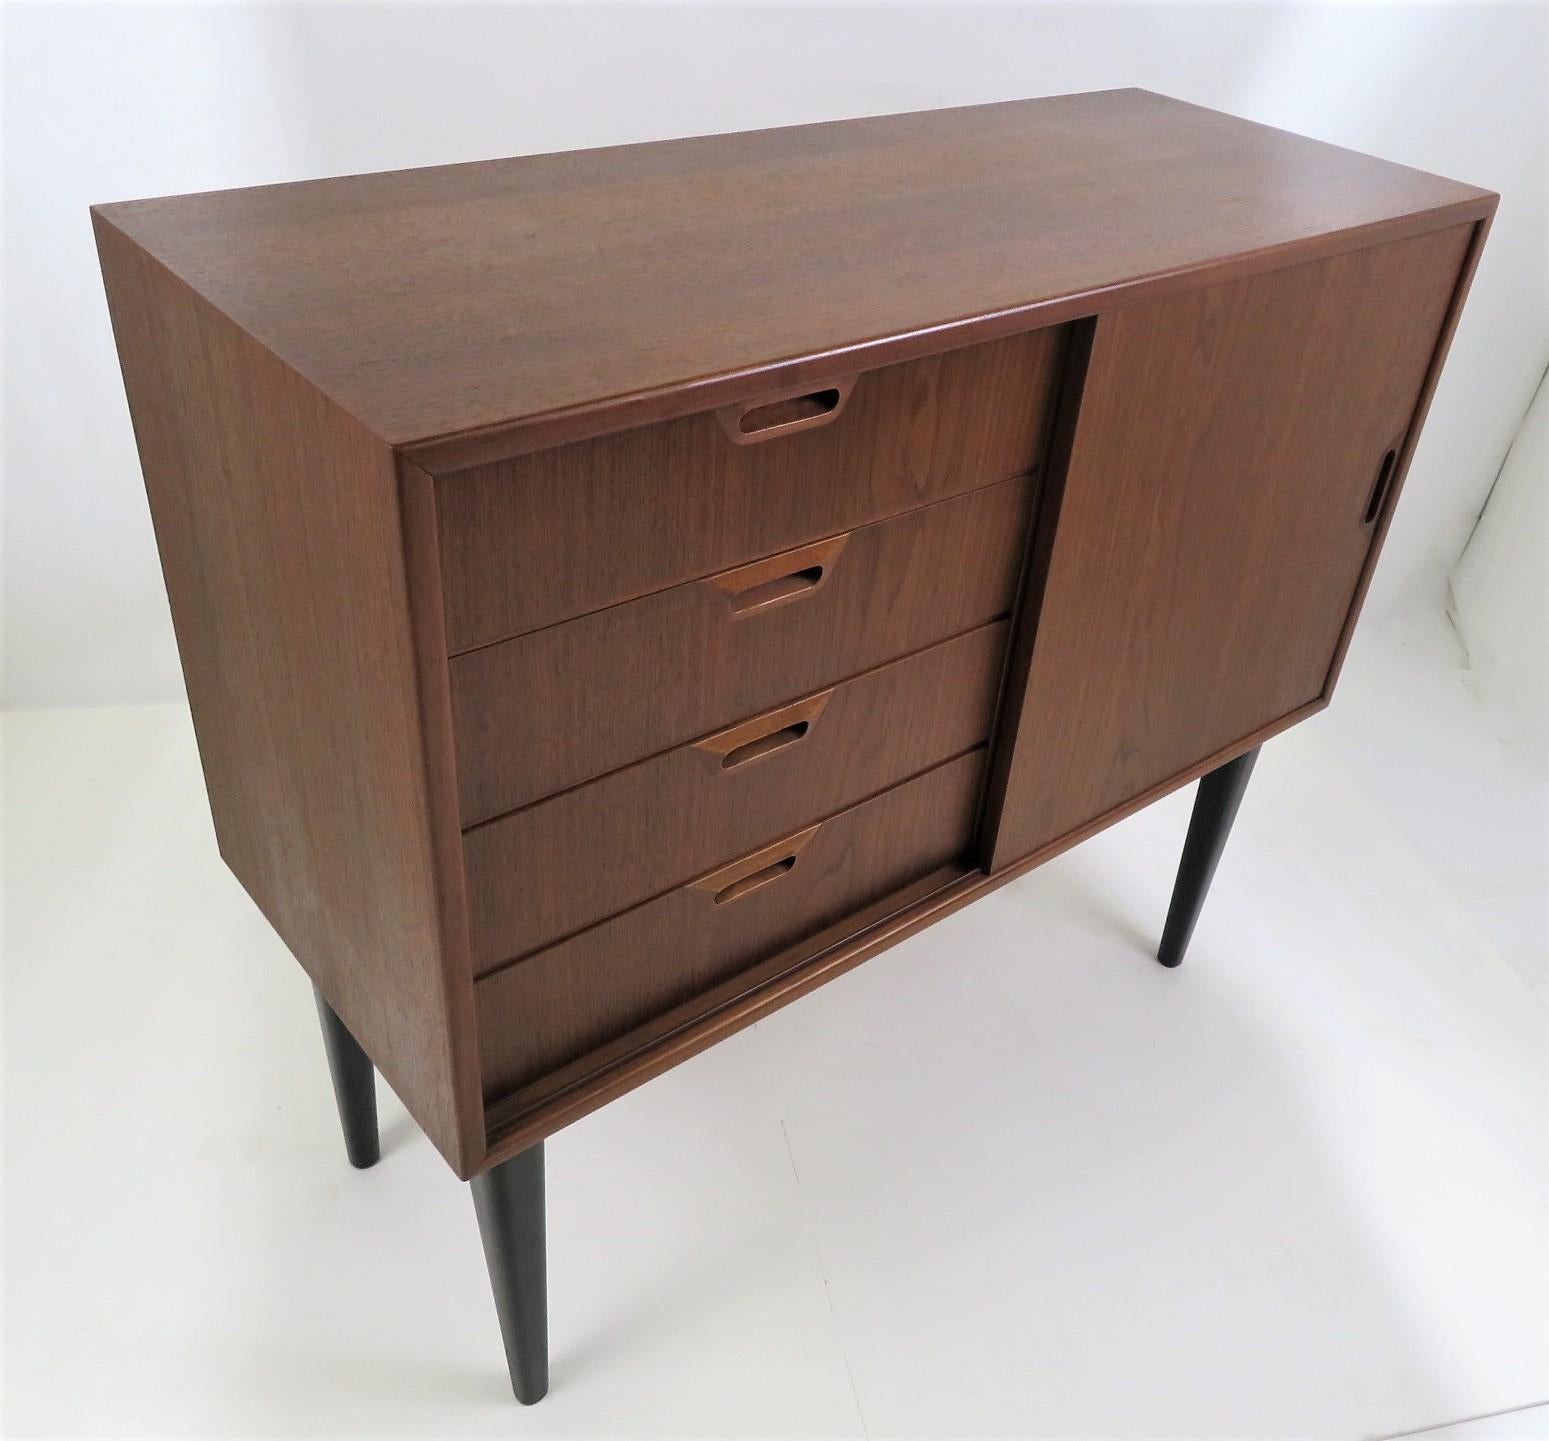 Danish 1950s Scandinavian Modern Narrow Walnut Cabinet or Bedside Cabinet